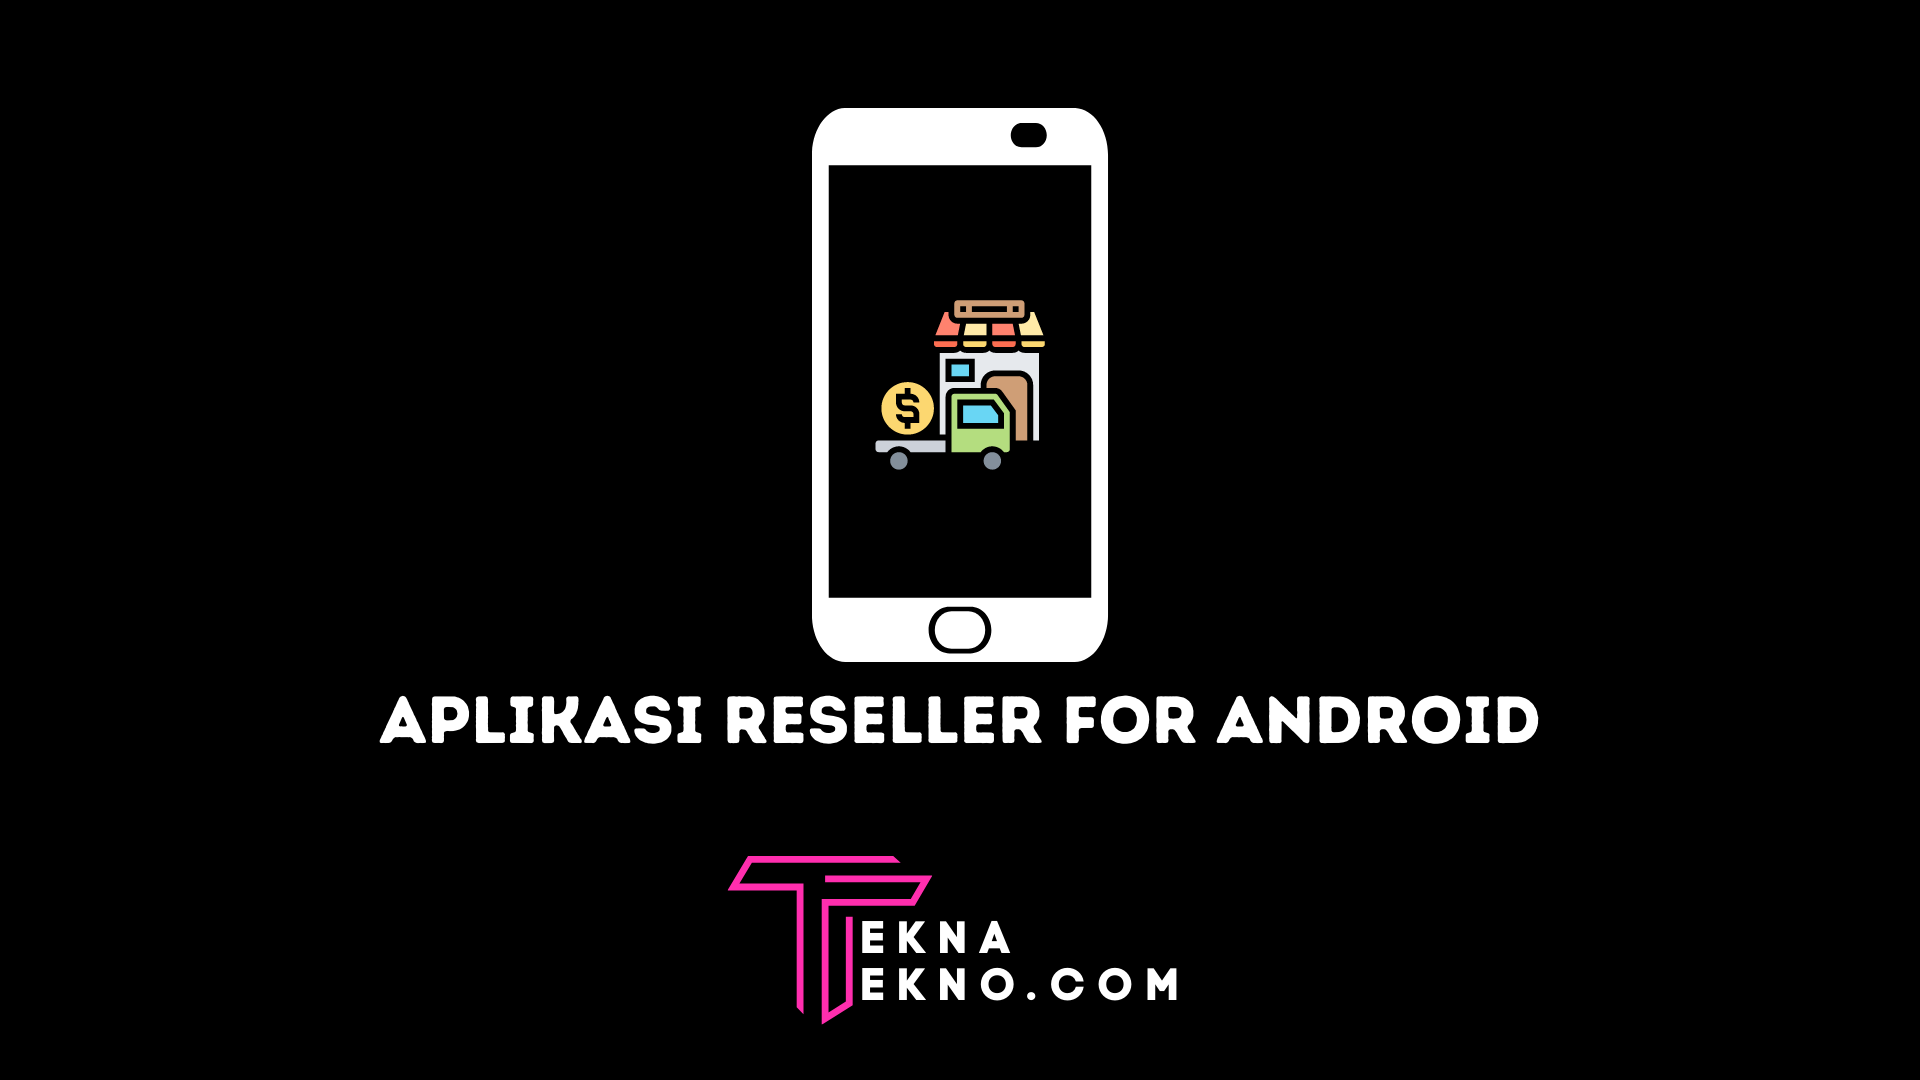 8+ Aplikasi Reseller Terbaik untuk Android8+ Aplikasi Reseller Terbaik untuk Android